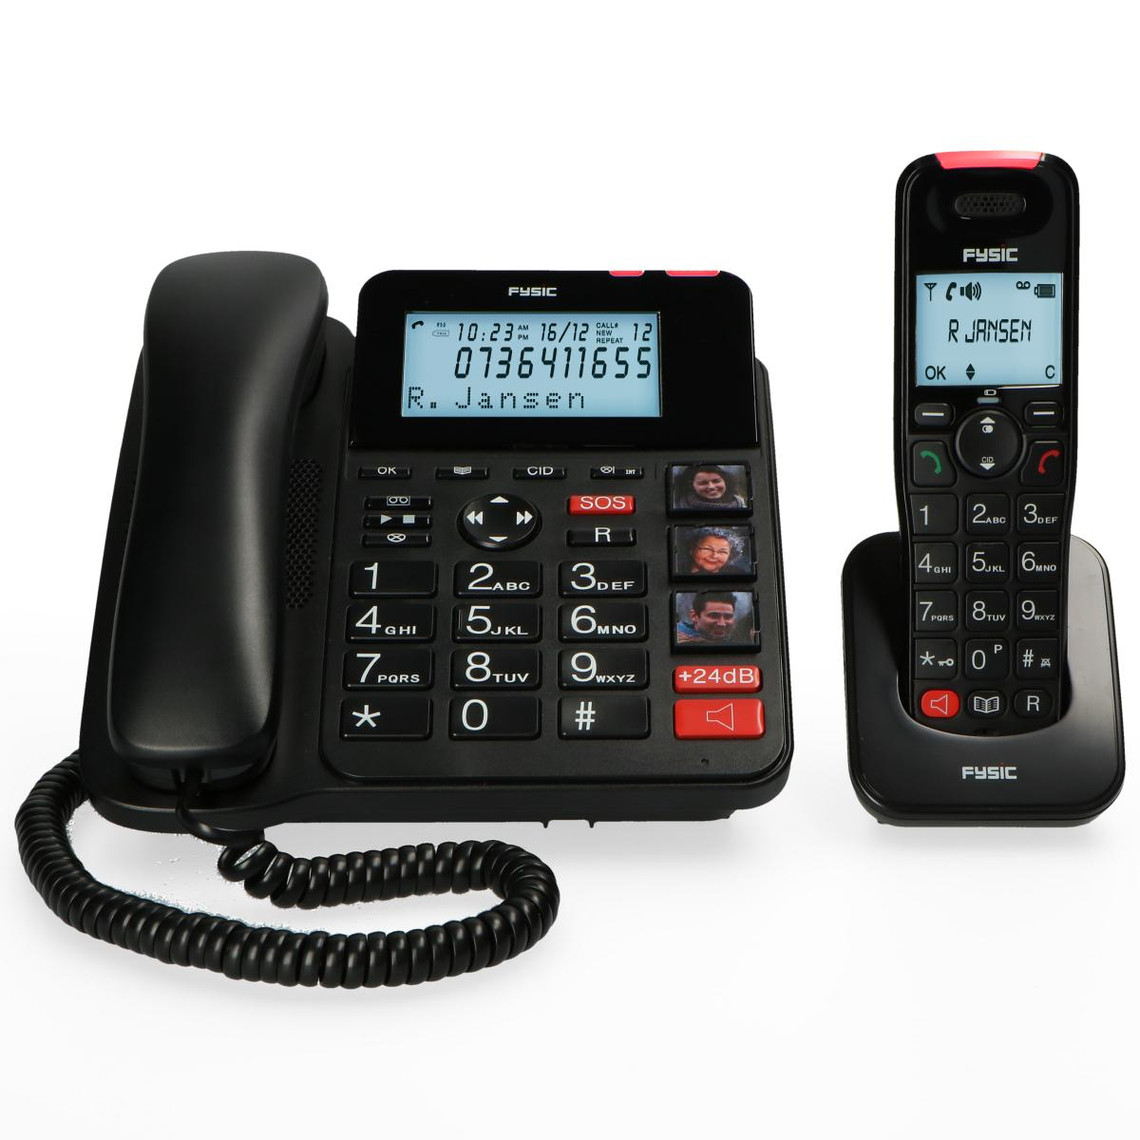 Téléphone fixe sans fil FYSIC Téléphone fixe sénior avec répondeur et téléphone sans fil FX-8025 Noir